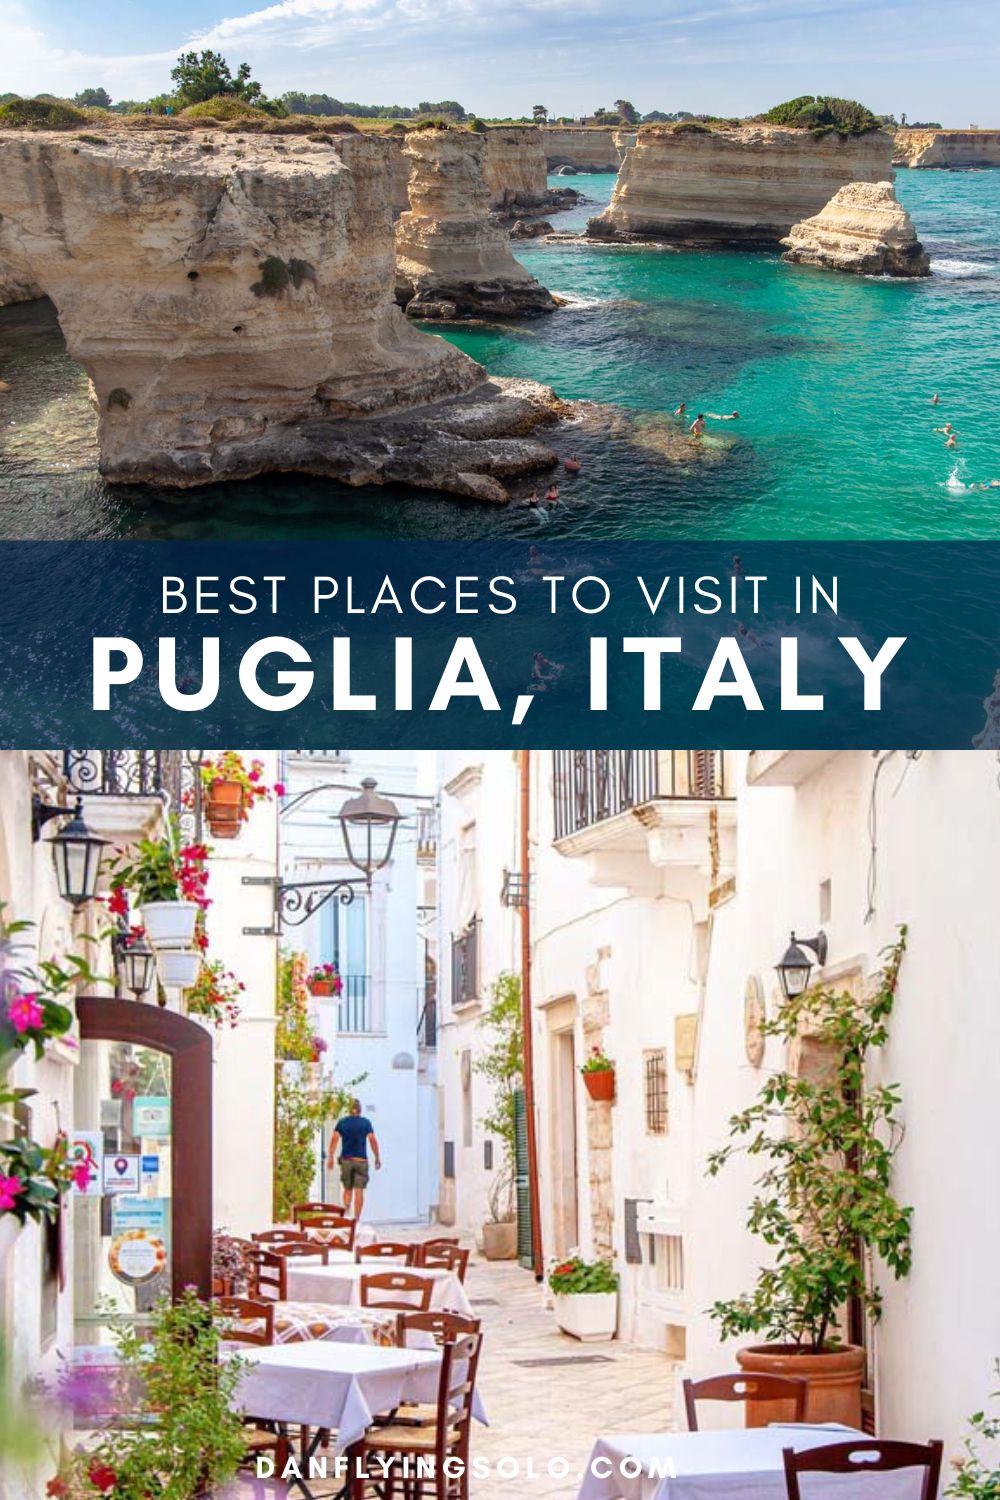 在本指南中，您将发现普利亚最值得做的事情和最好的旅游景点，如阿尔贝罗贝罗、莱切、洛科罗通多和波利尼亚诺。